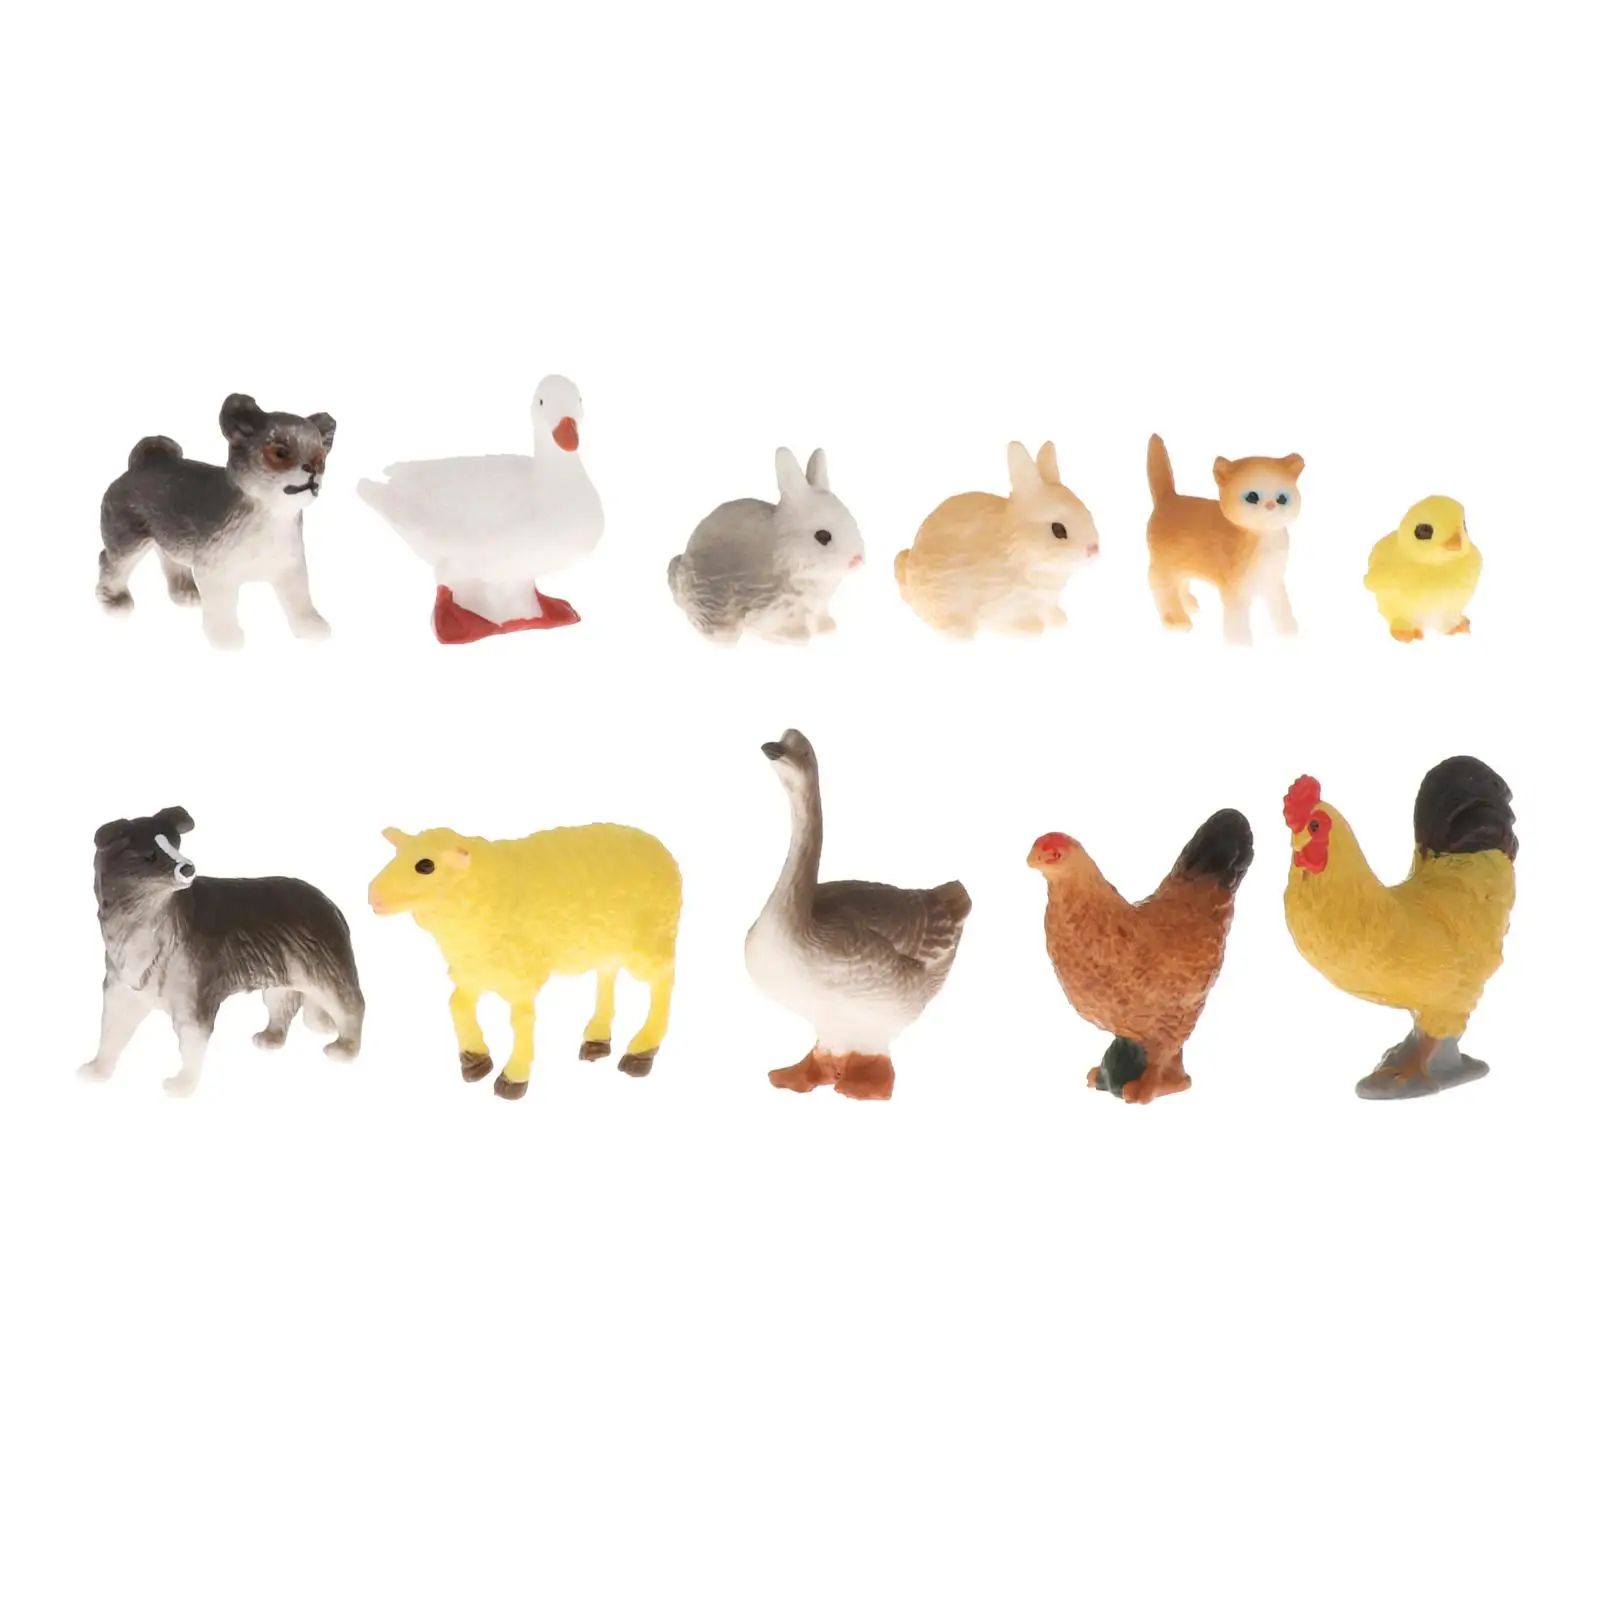 Пластиковая фигурка сельскохозяйственных животных, модель птицы, миниатюрные фигурки, подарок